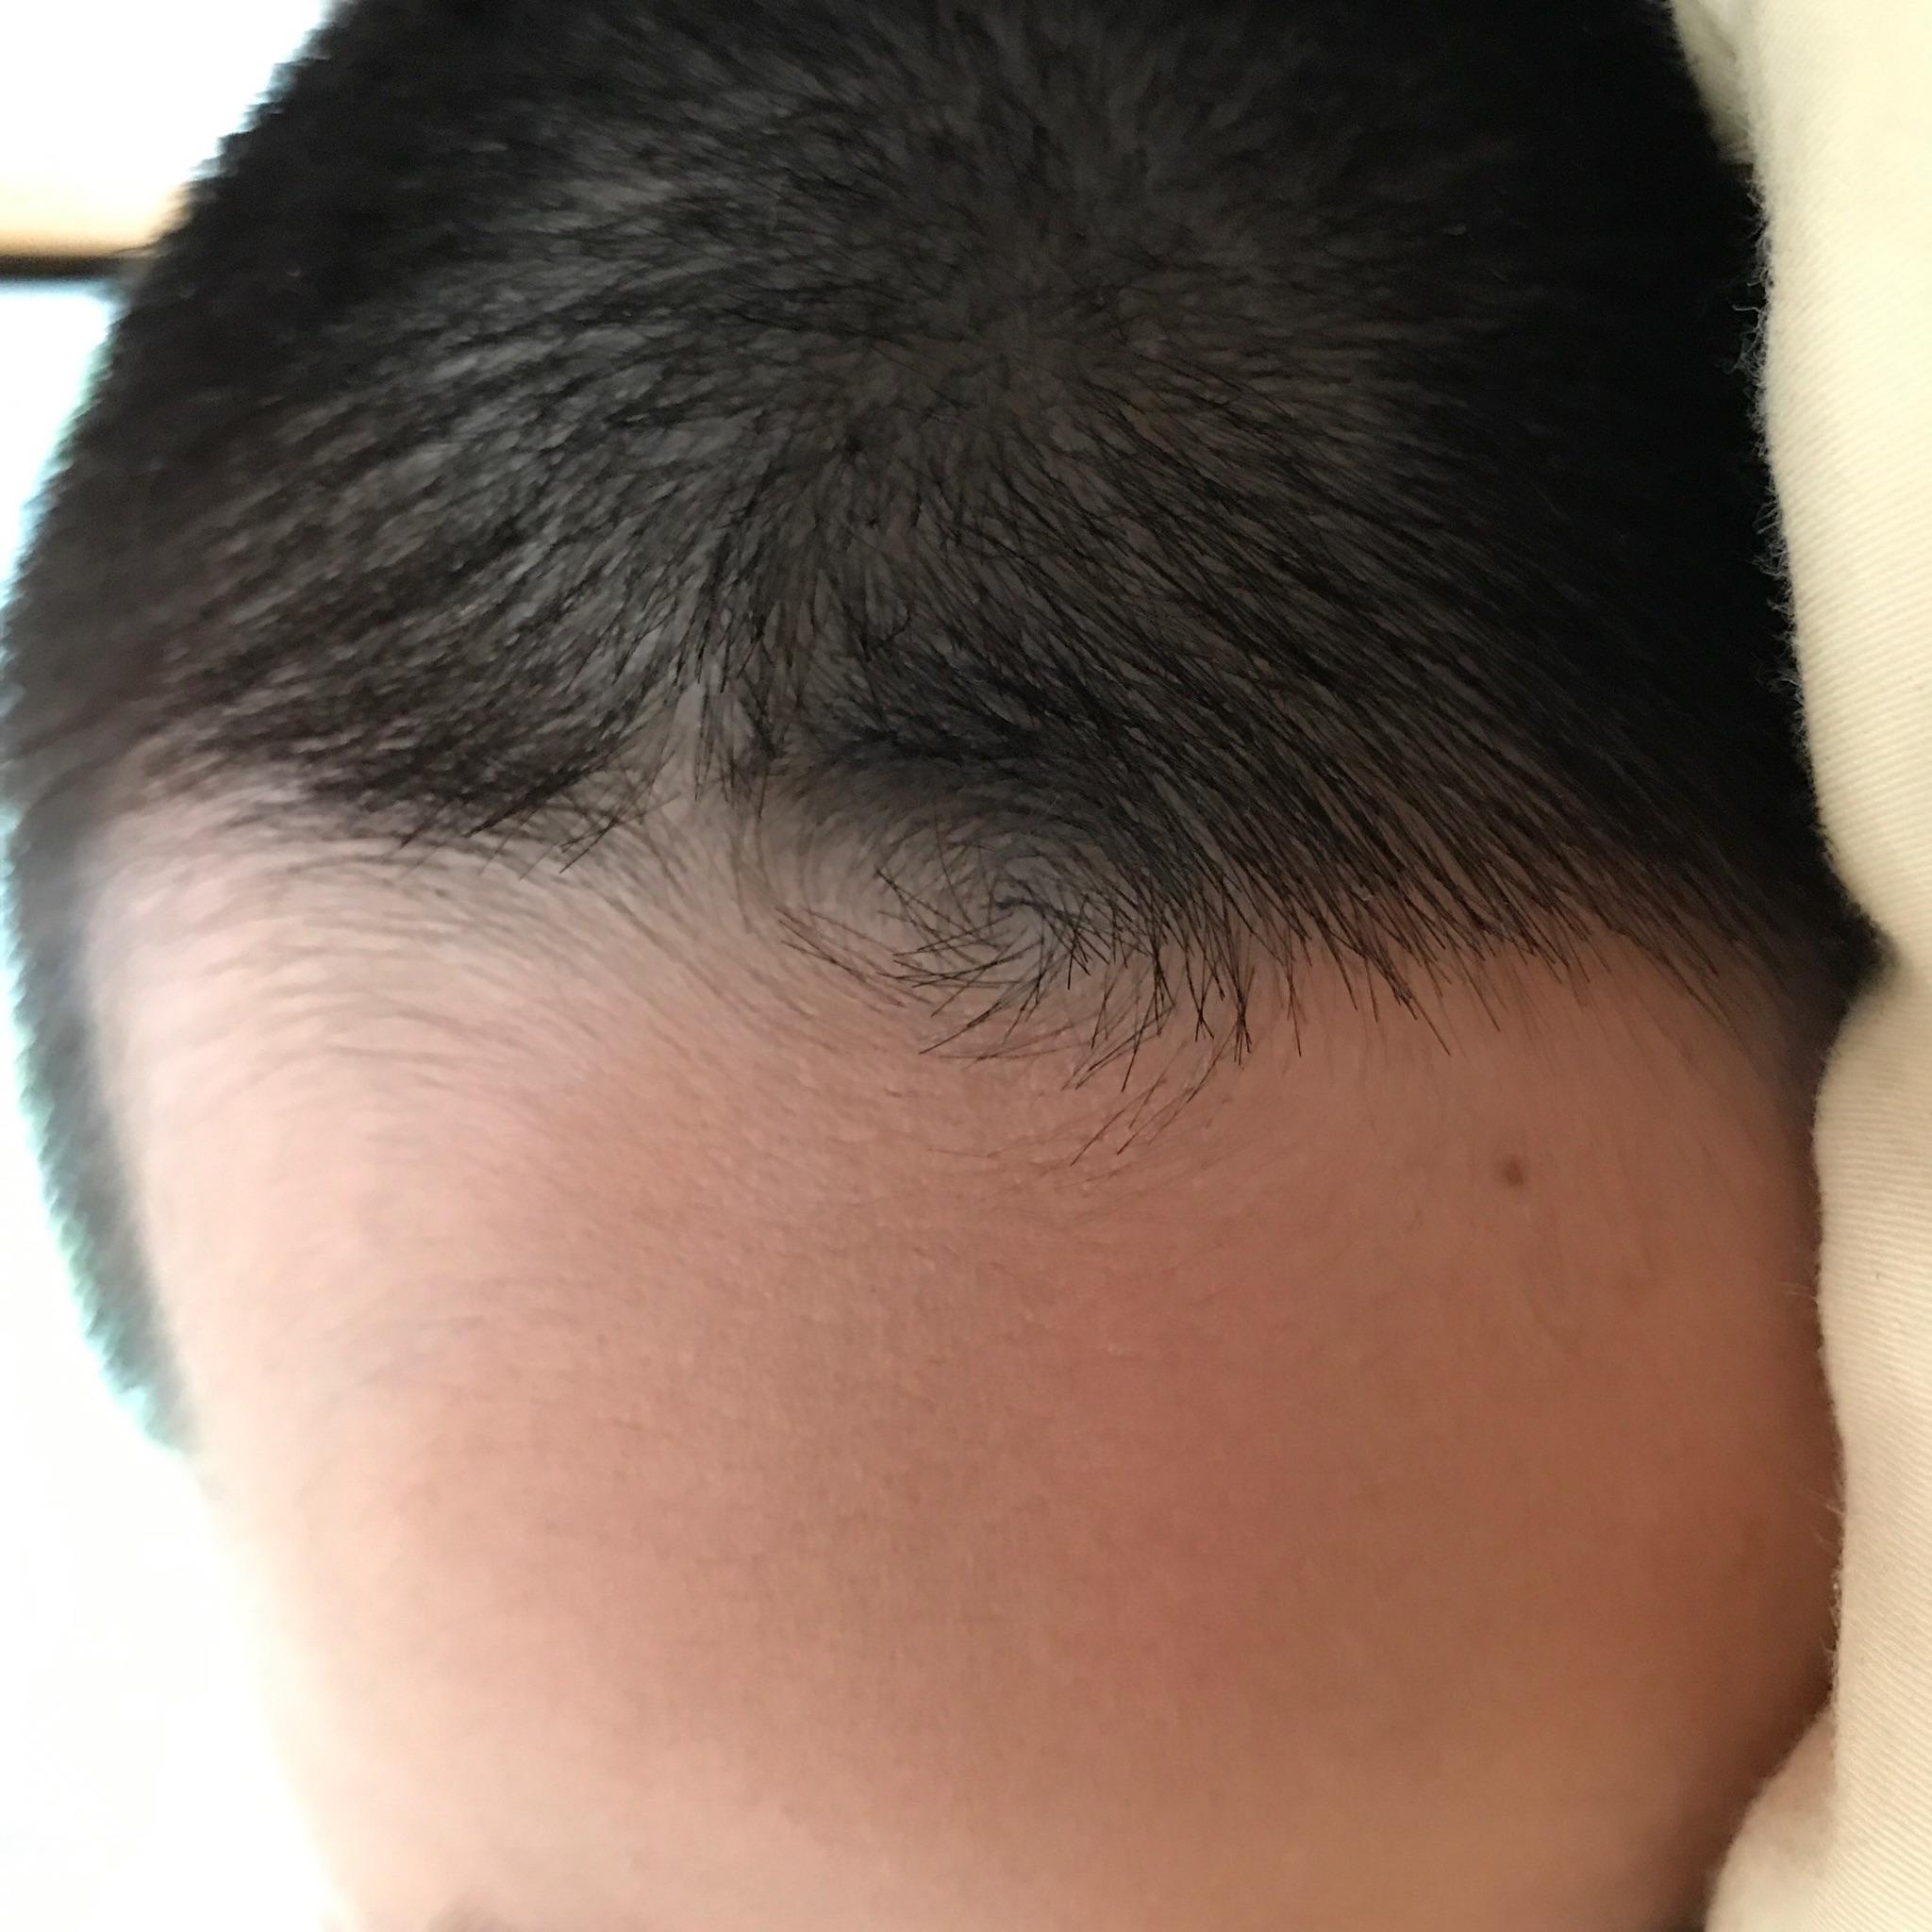 婴儿眉尾有旋的图片图片